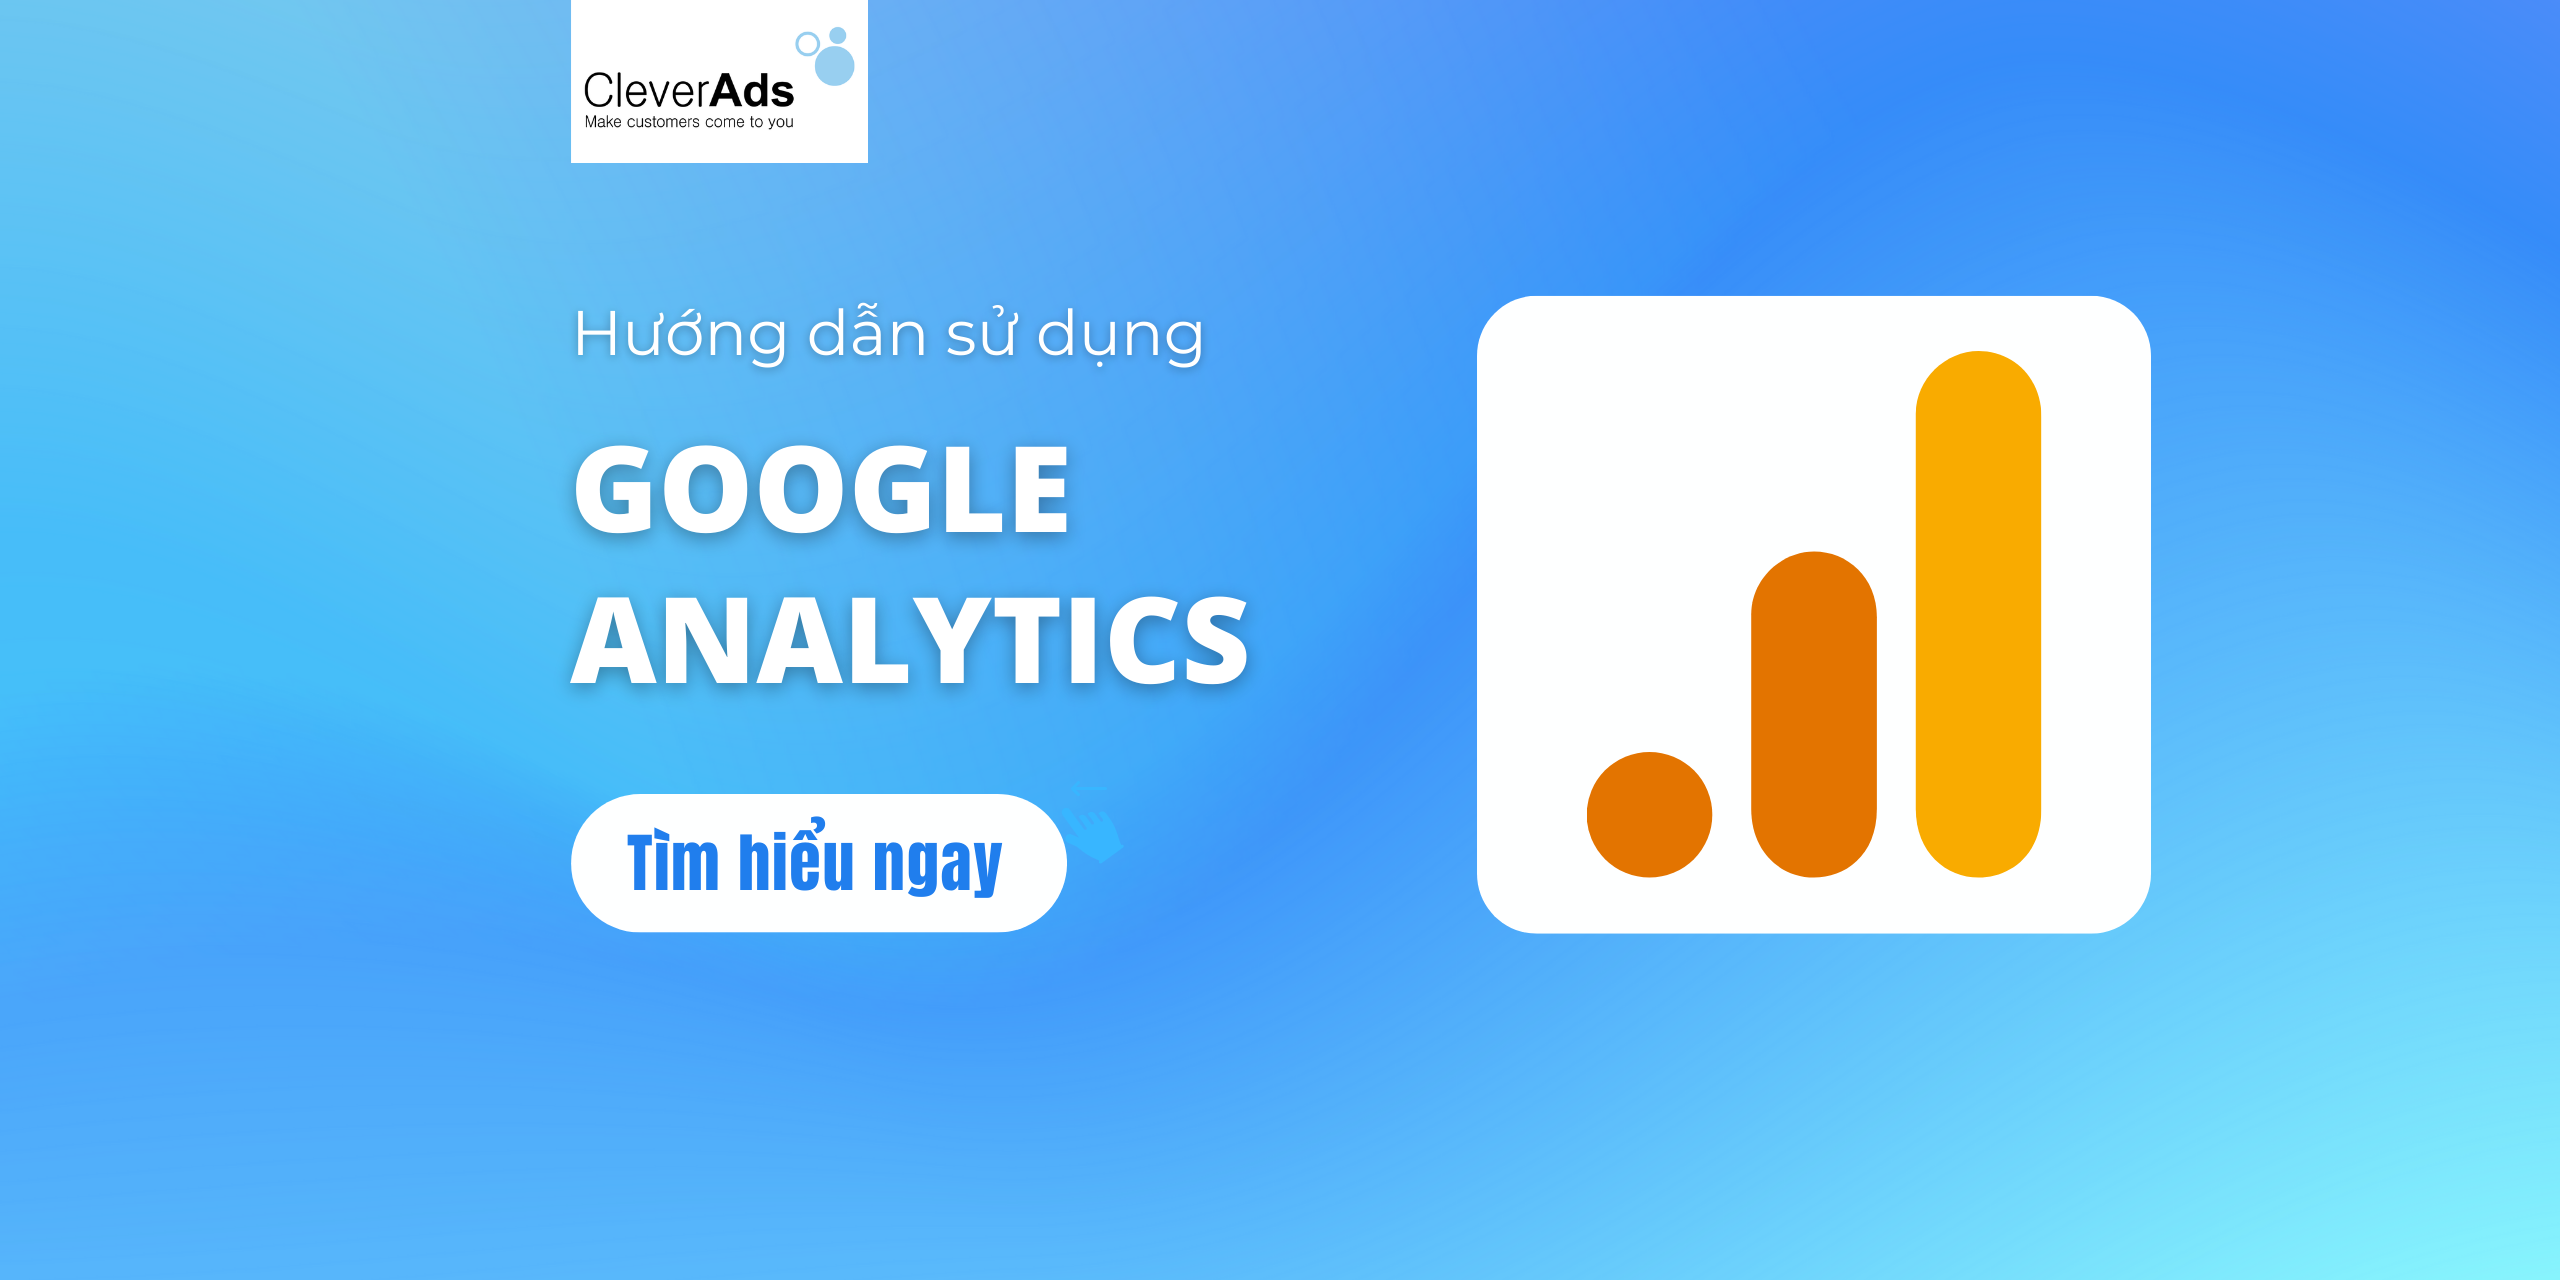 Google analytics – Cách sử dụng Google Analytics để tăng rank cho website